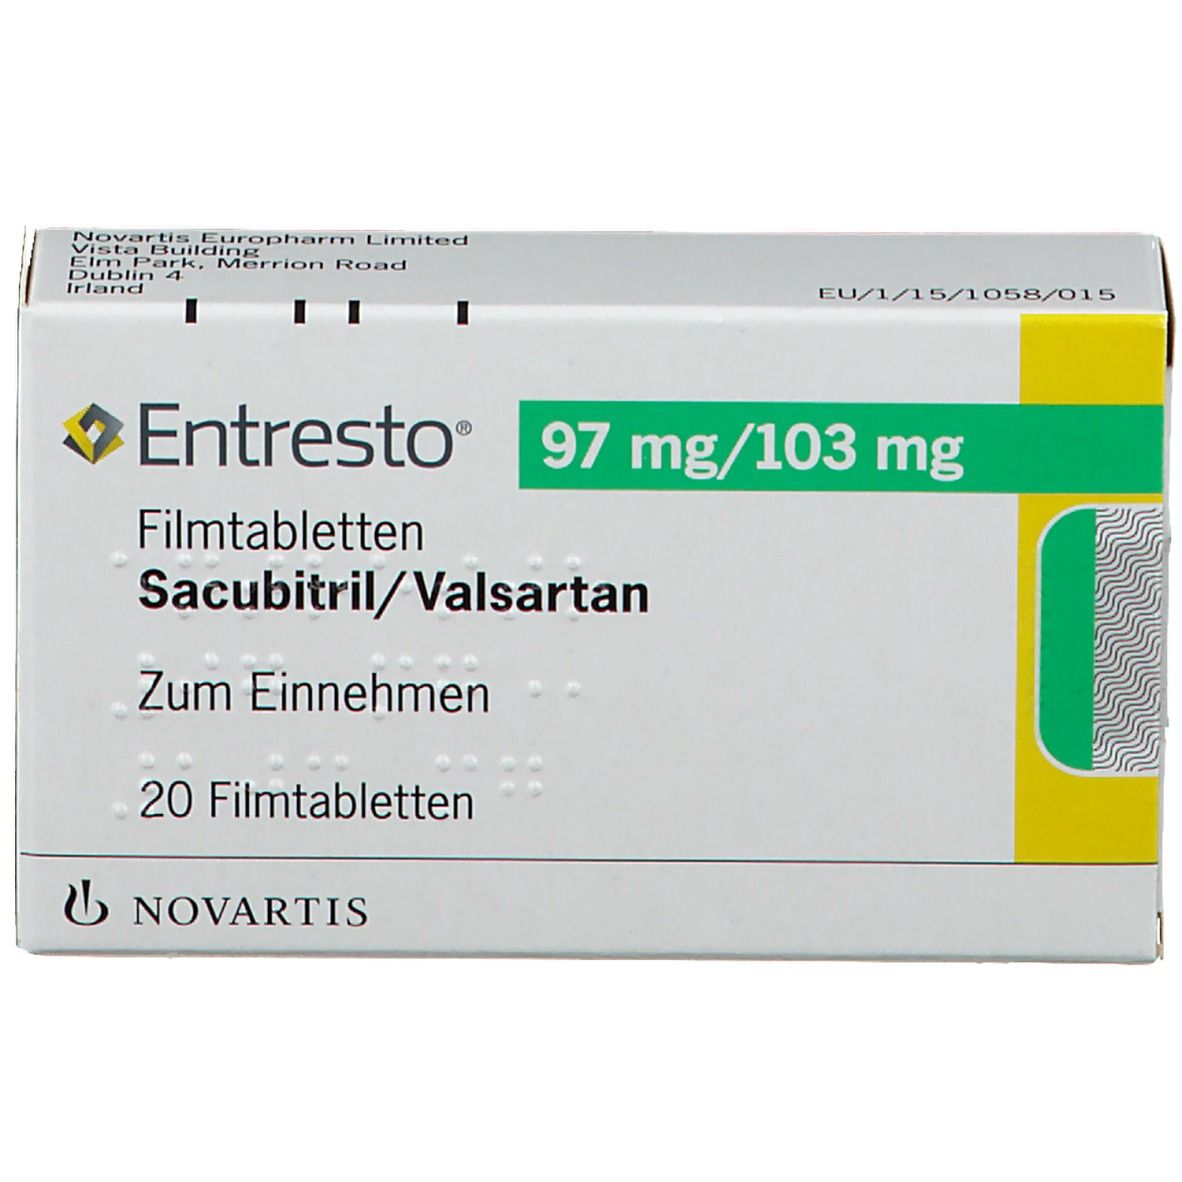 Entresto® 97 mg/103 mg